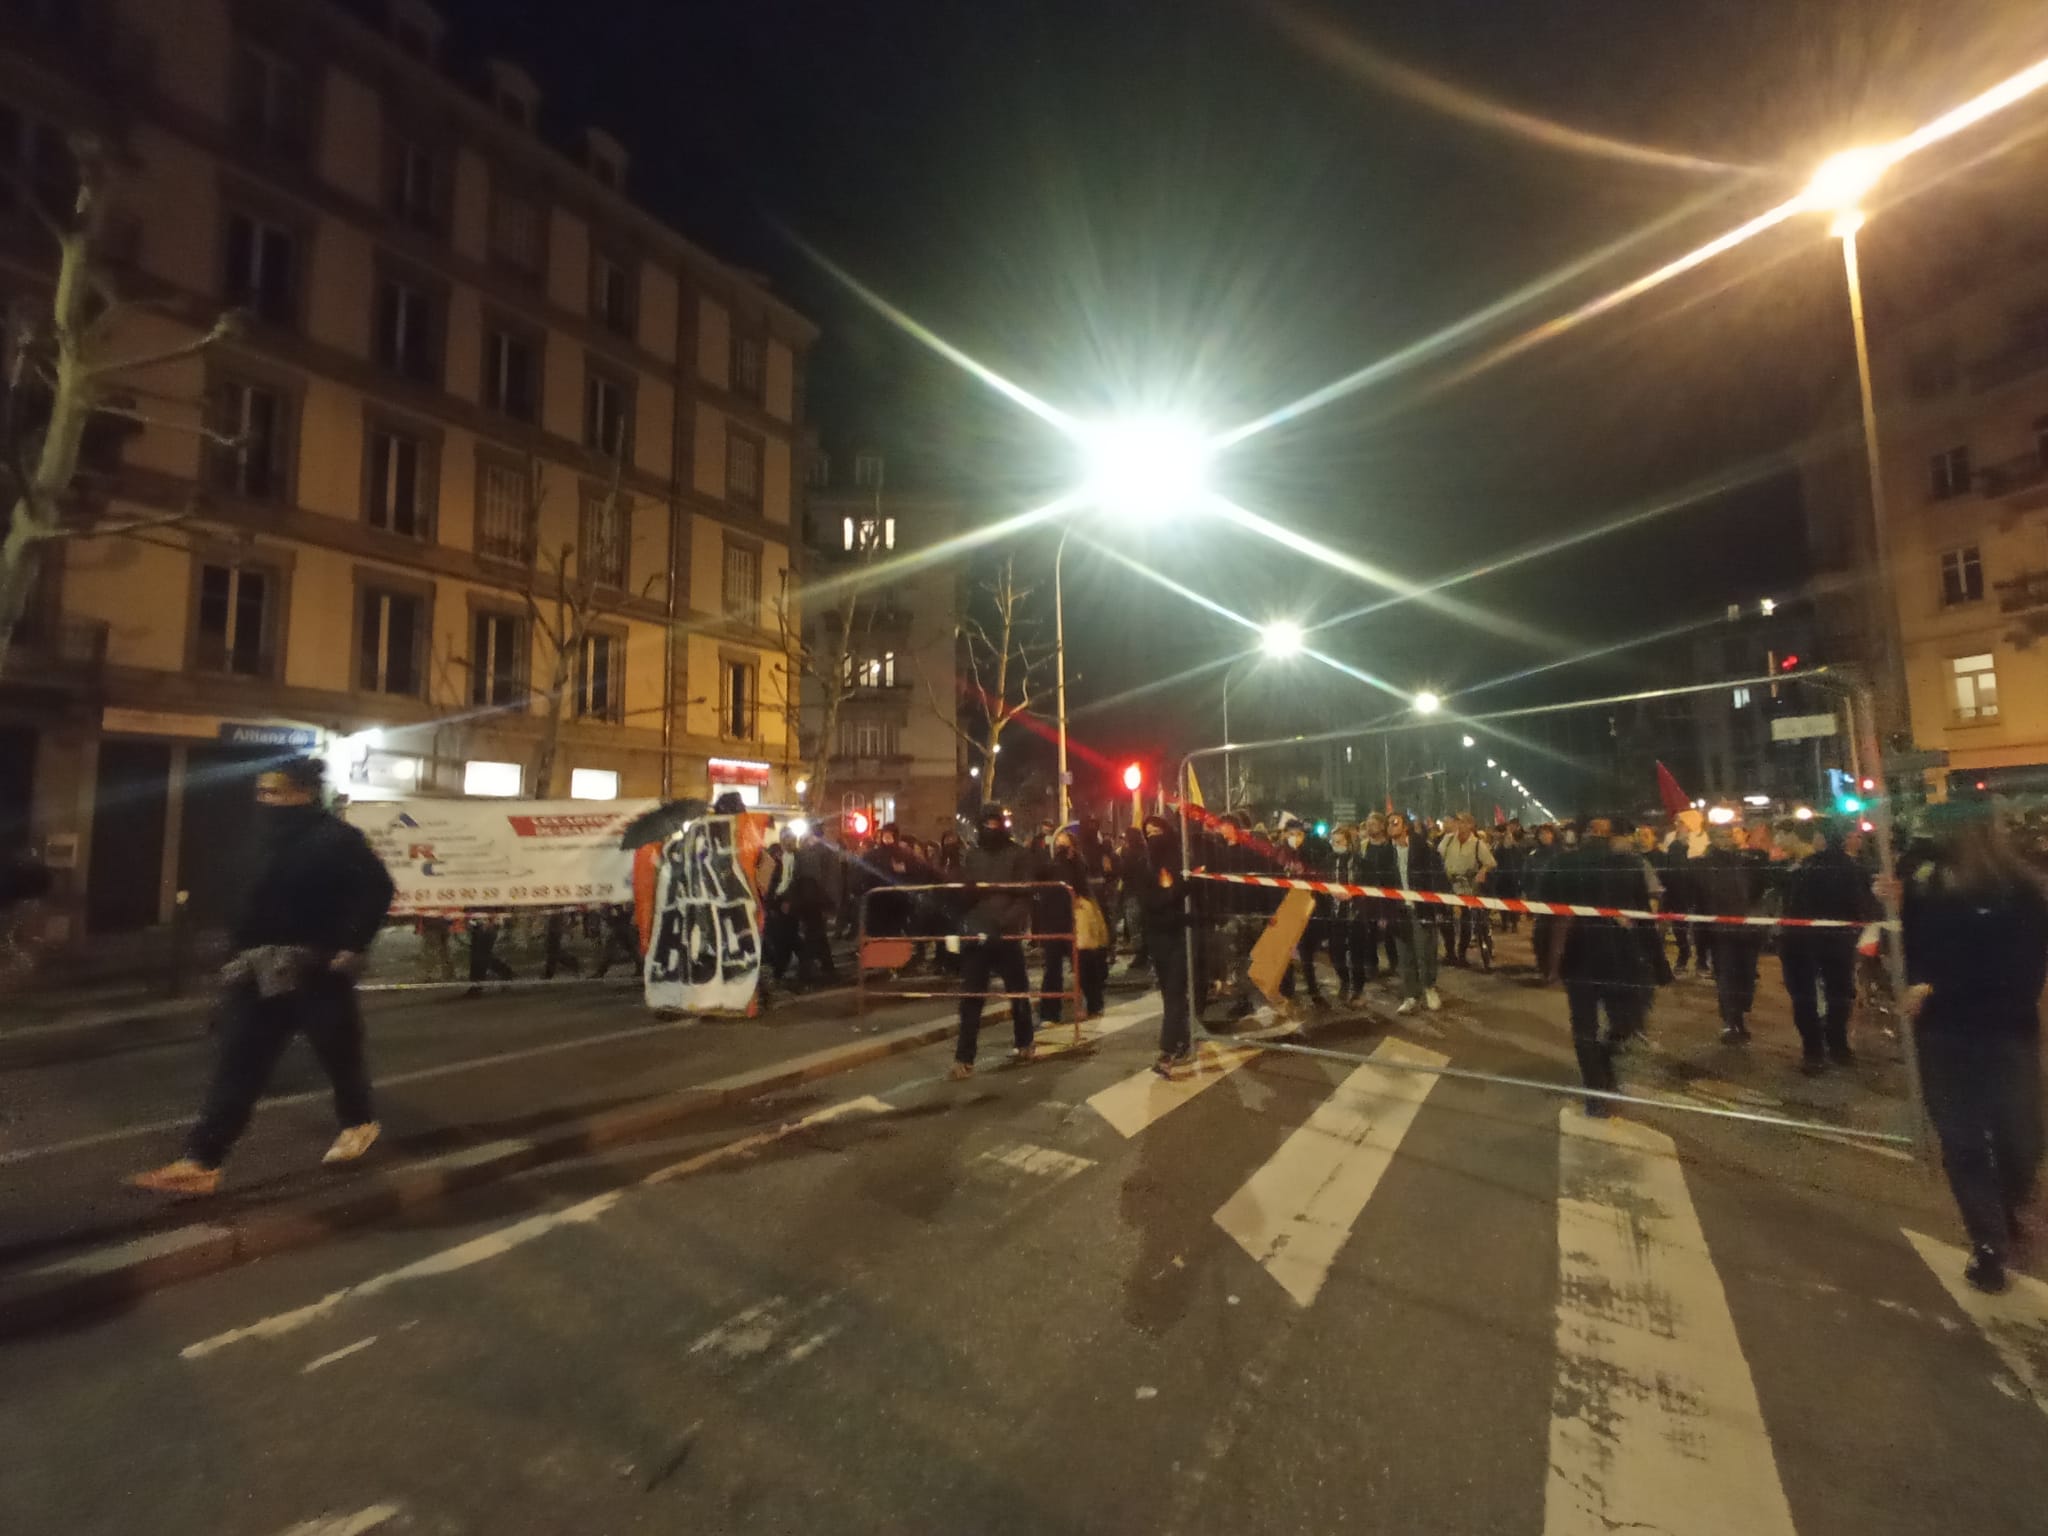 « On n’en pouvait plus de marcher tranquillement » : plus de 1 500 personnes en colère enflamment les rues de Strasbourg